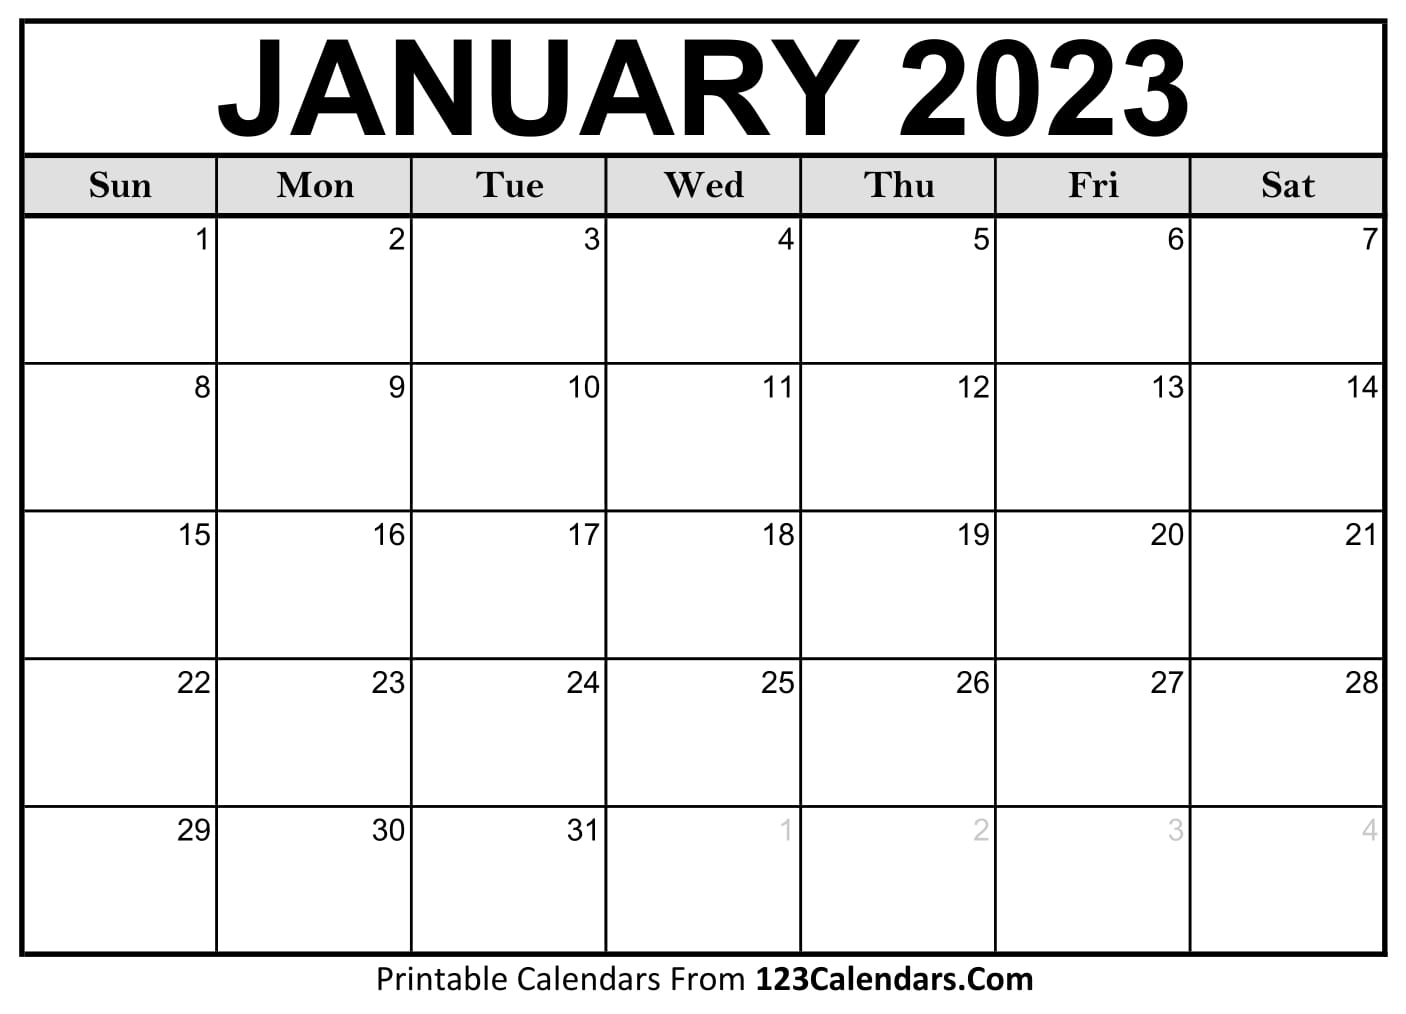 Printable January 2023 Calendar Templates 123Calendars com